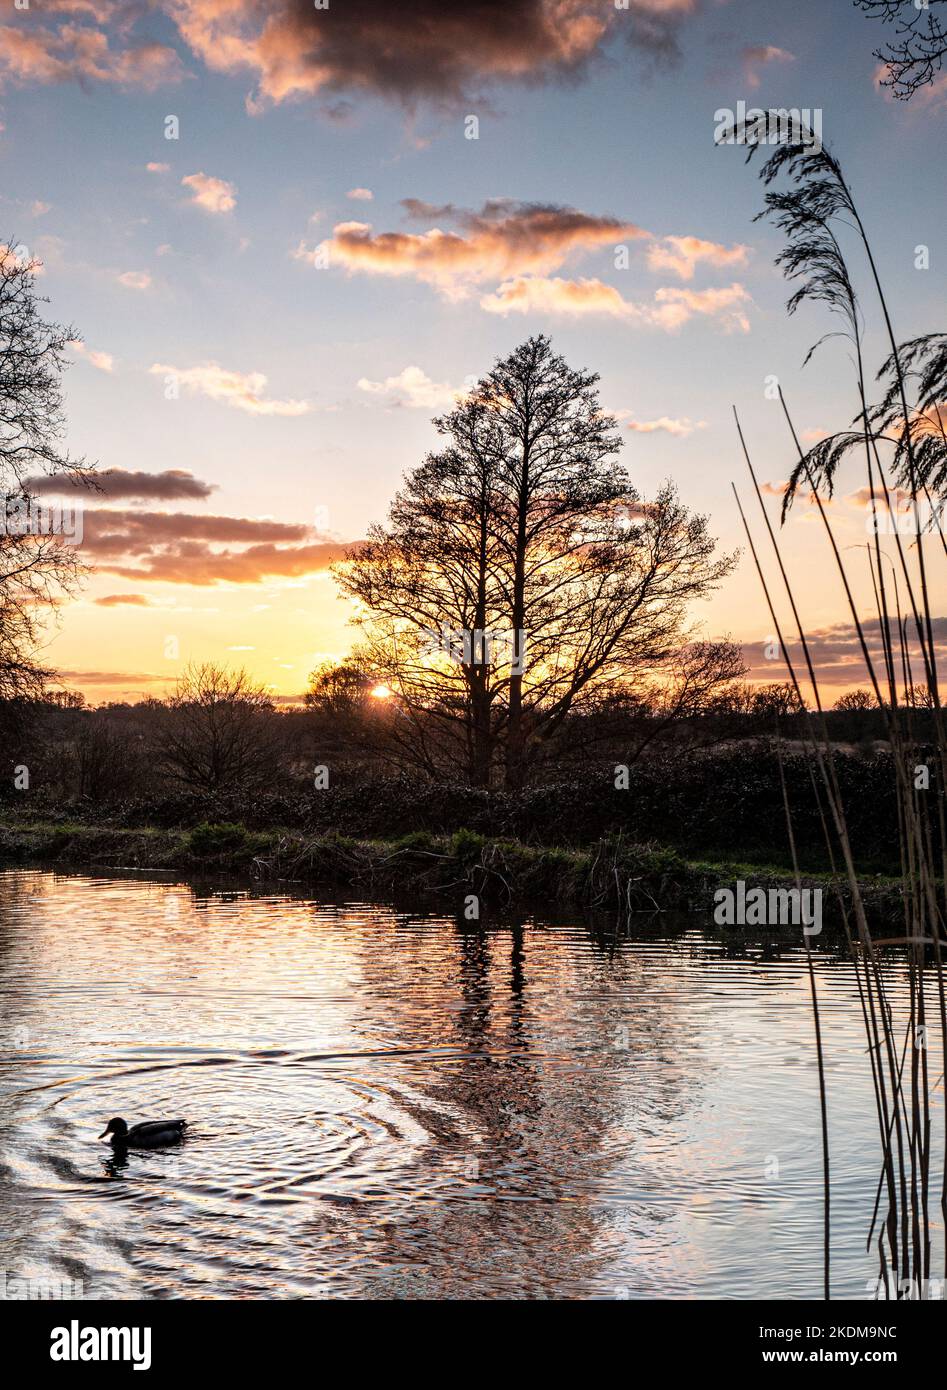 River Wey hiver coucher de soleil crépuscule avec un canard collard se dirigeant vers son refuge de nuit, River Wey Ripley Surrey Royaume-Uni Banque D'Images